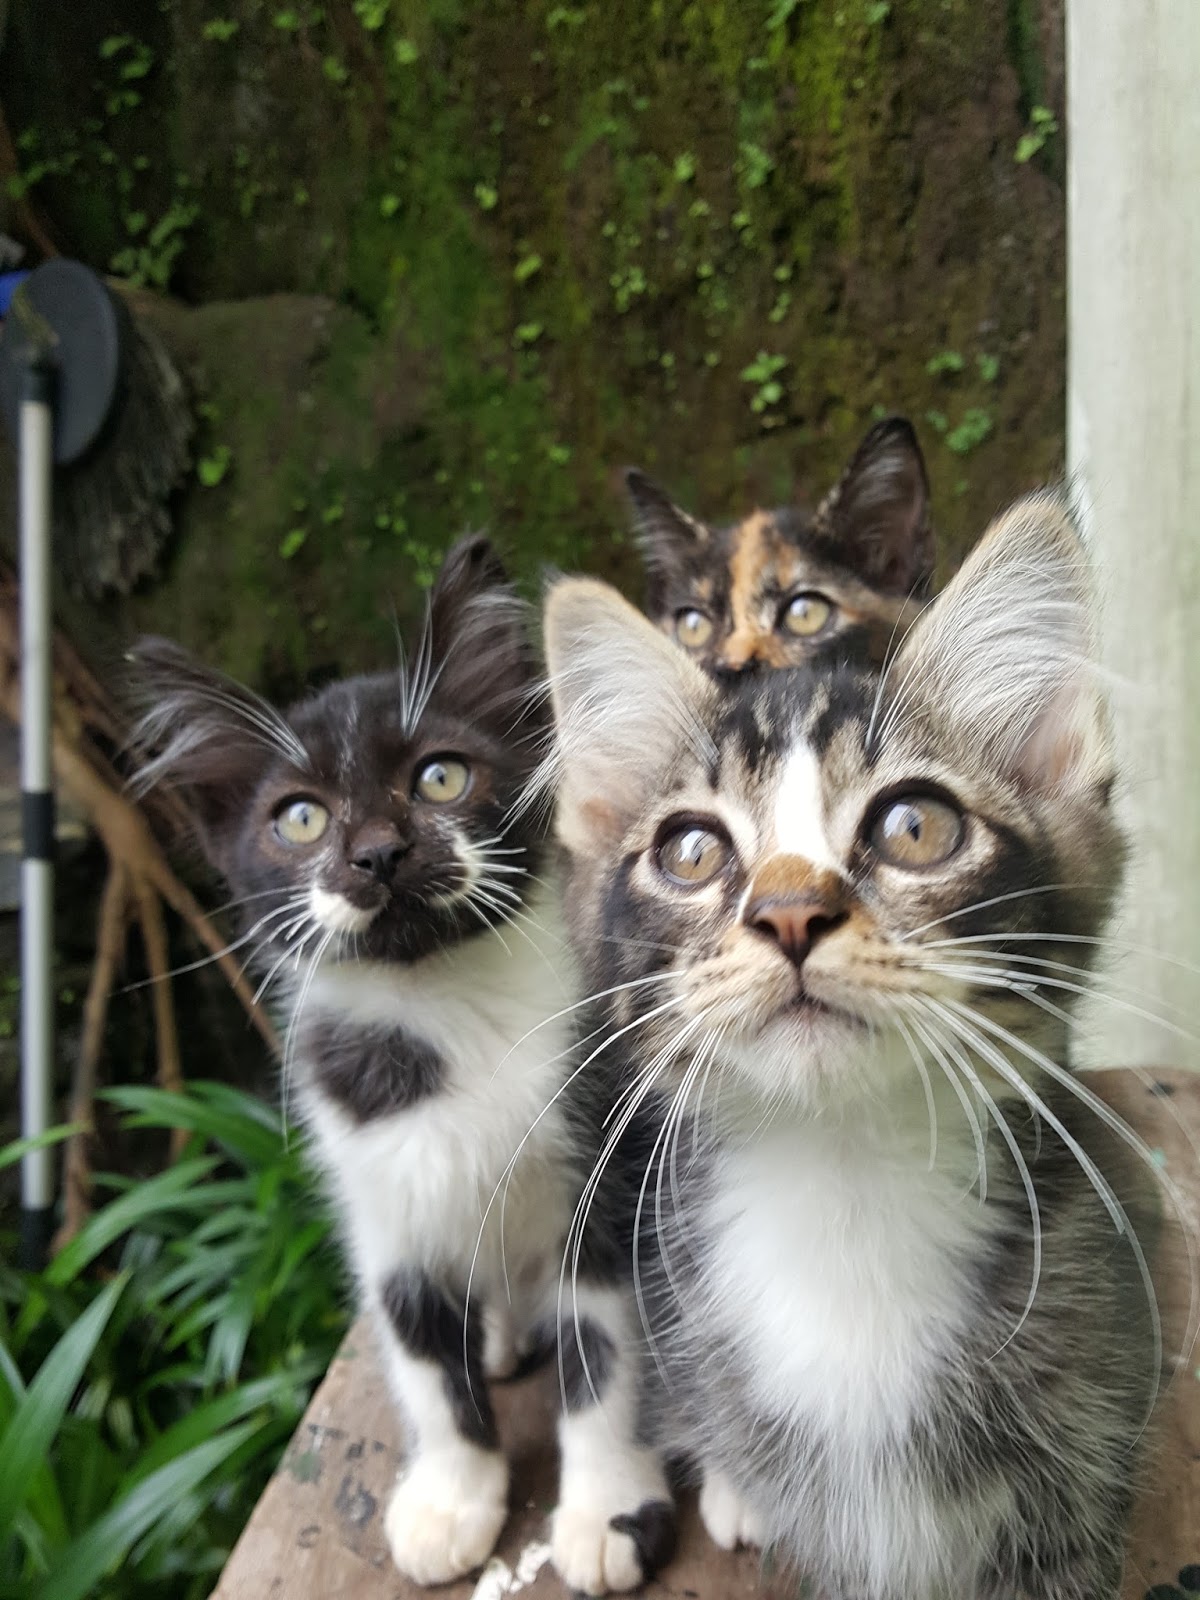 Jenis Jenis Kucing Kampung Di Indonesia mudah diingat - Kucing Betina